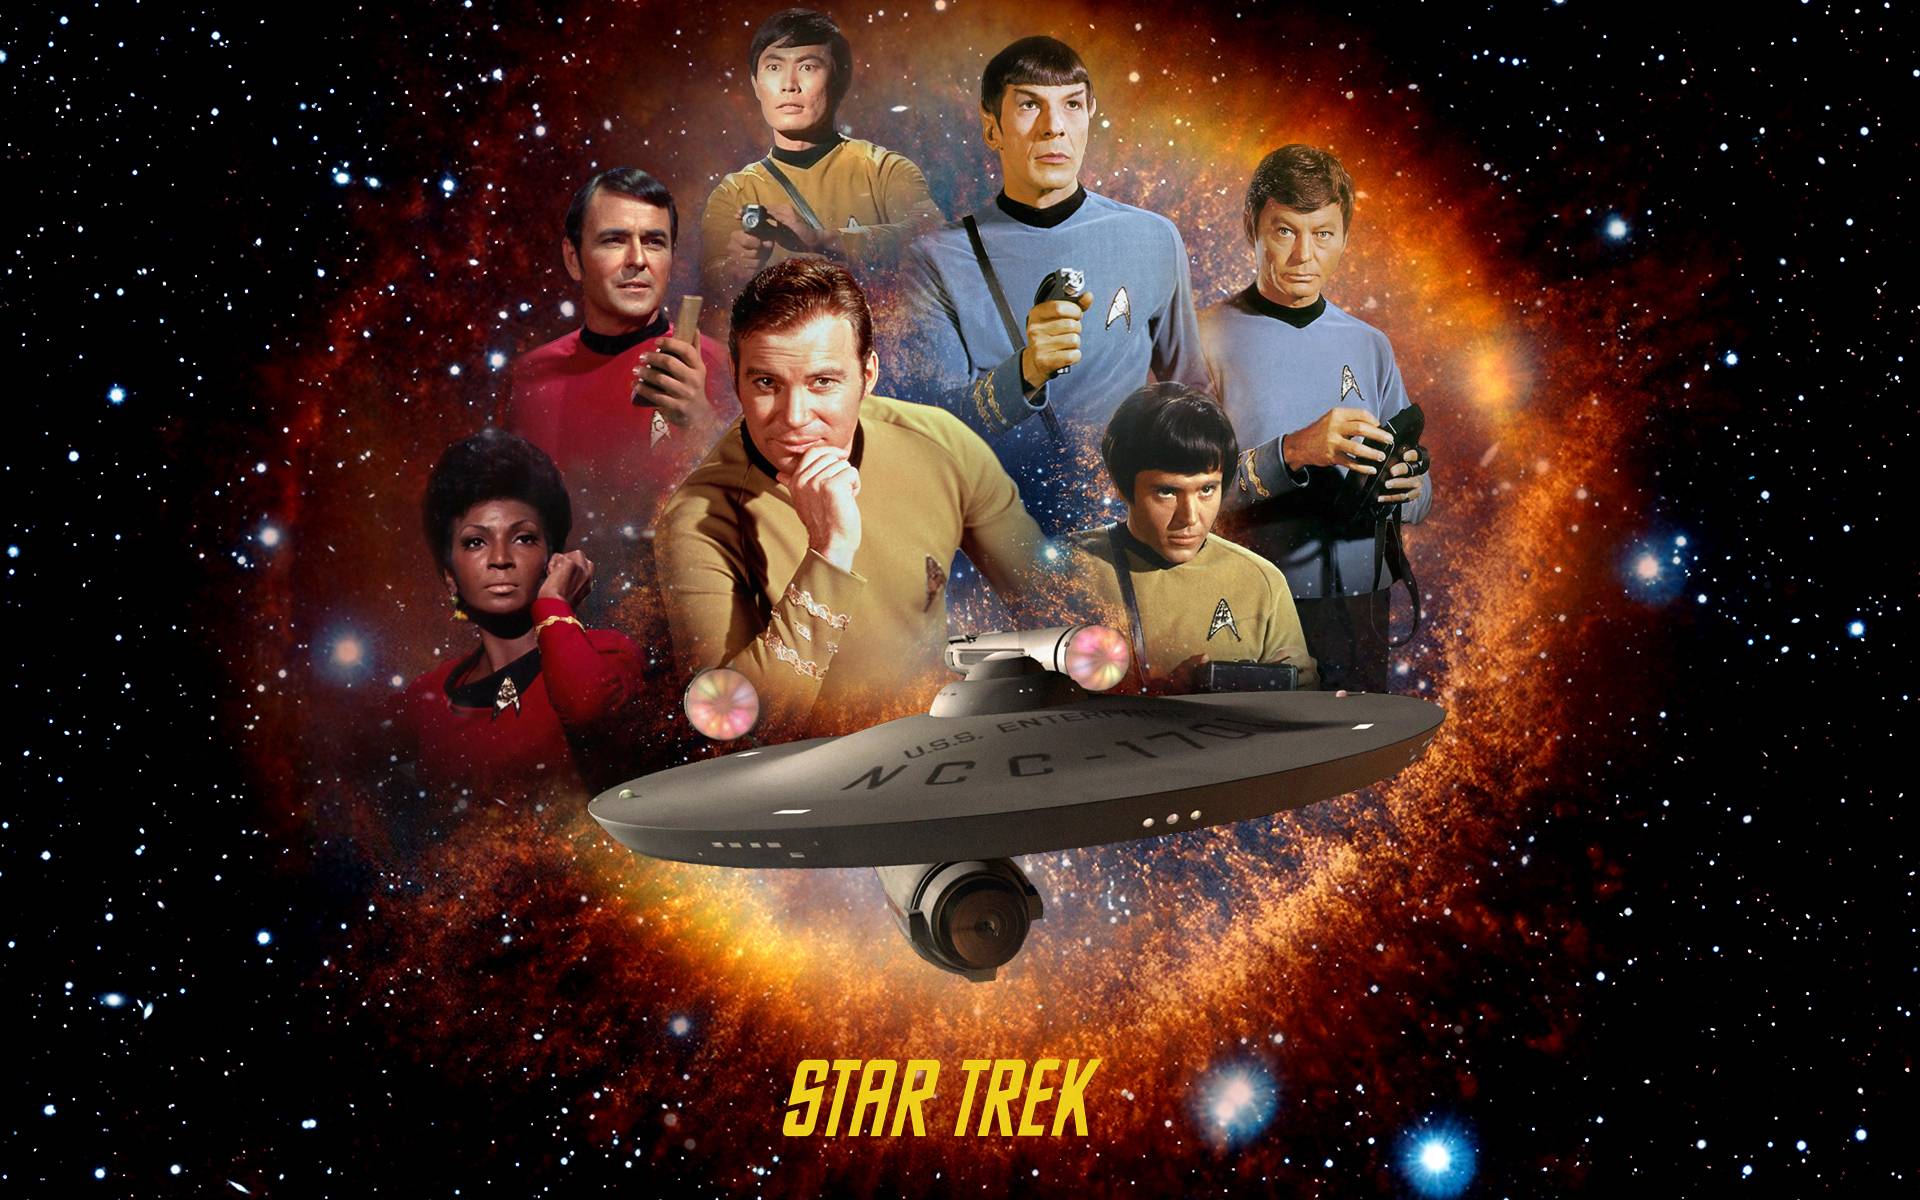 Star Trek: The Original Series Wallpapers - Wallpaper Cave